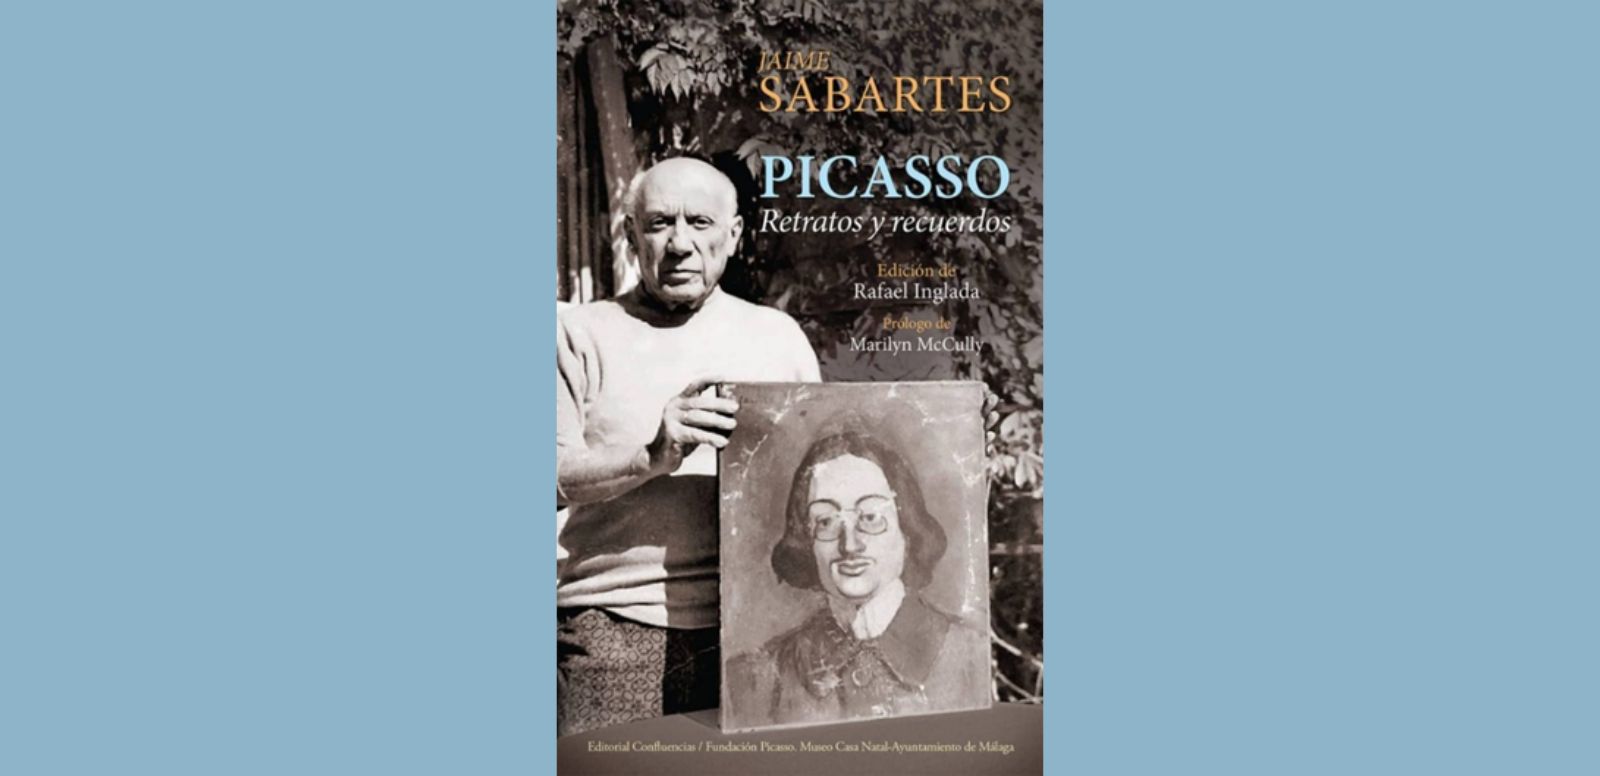 Jaime Sabartés, “Picasso. Retratos y recuerdos.” 